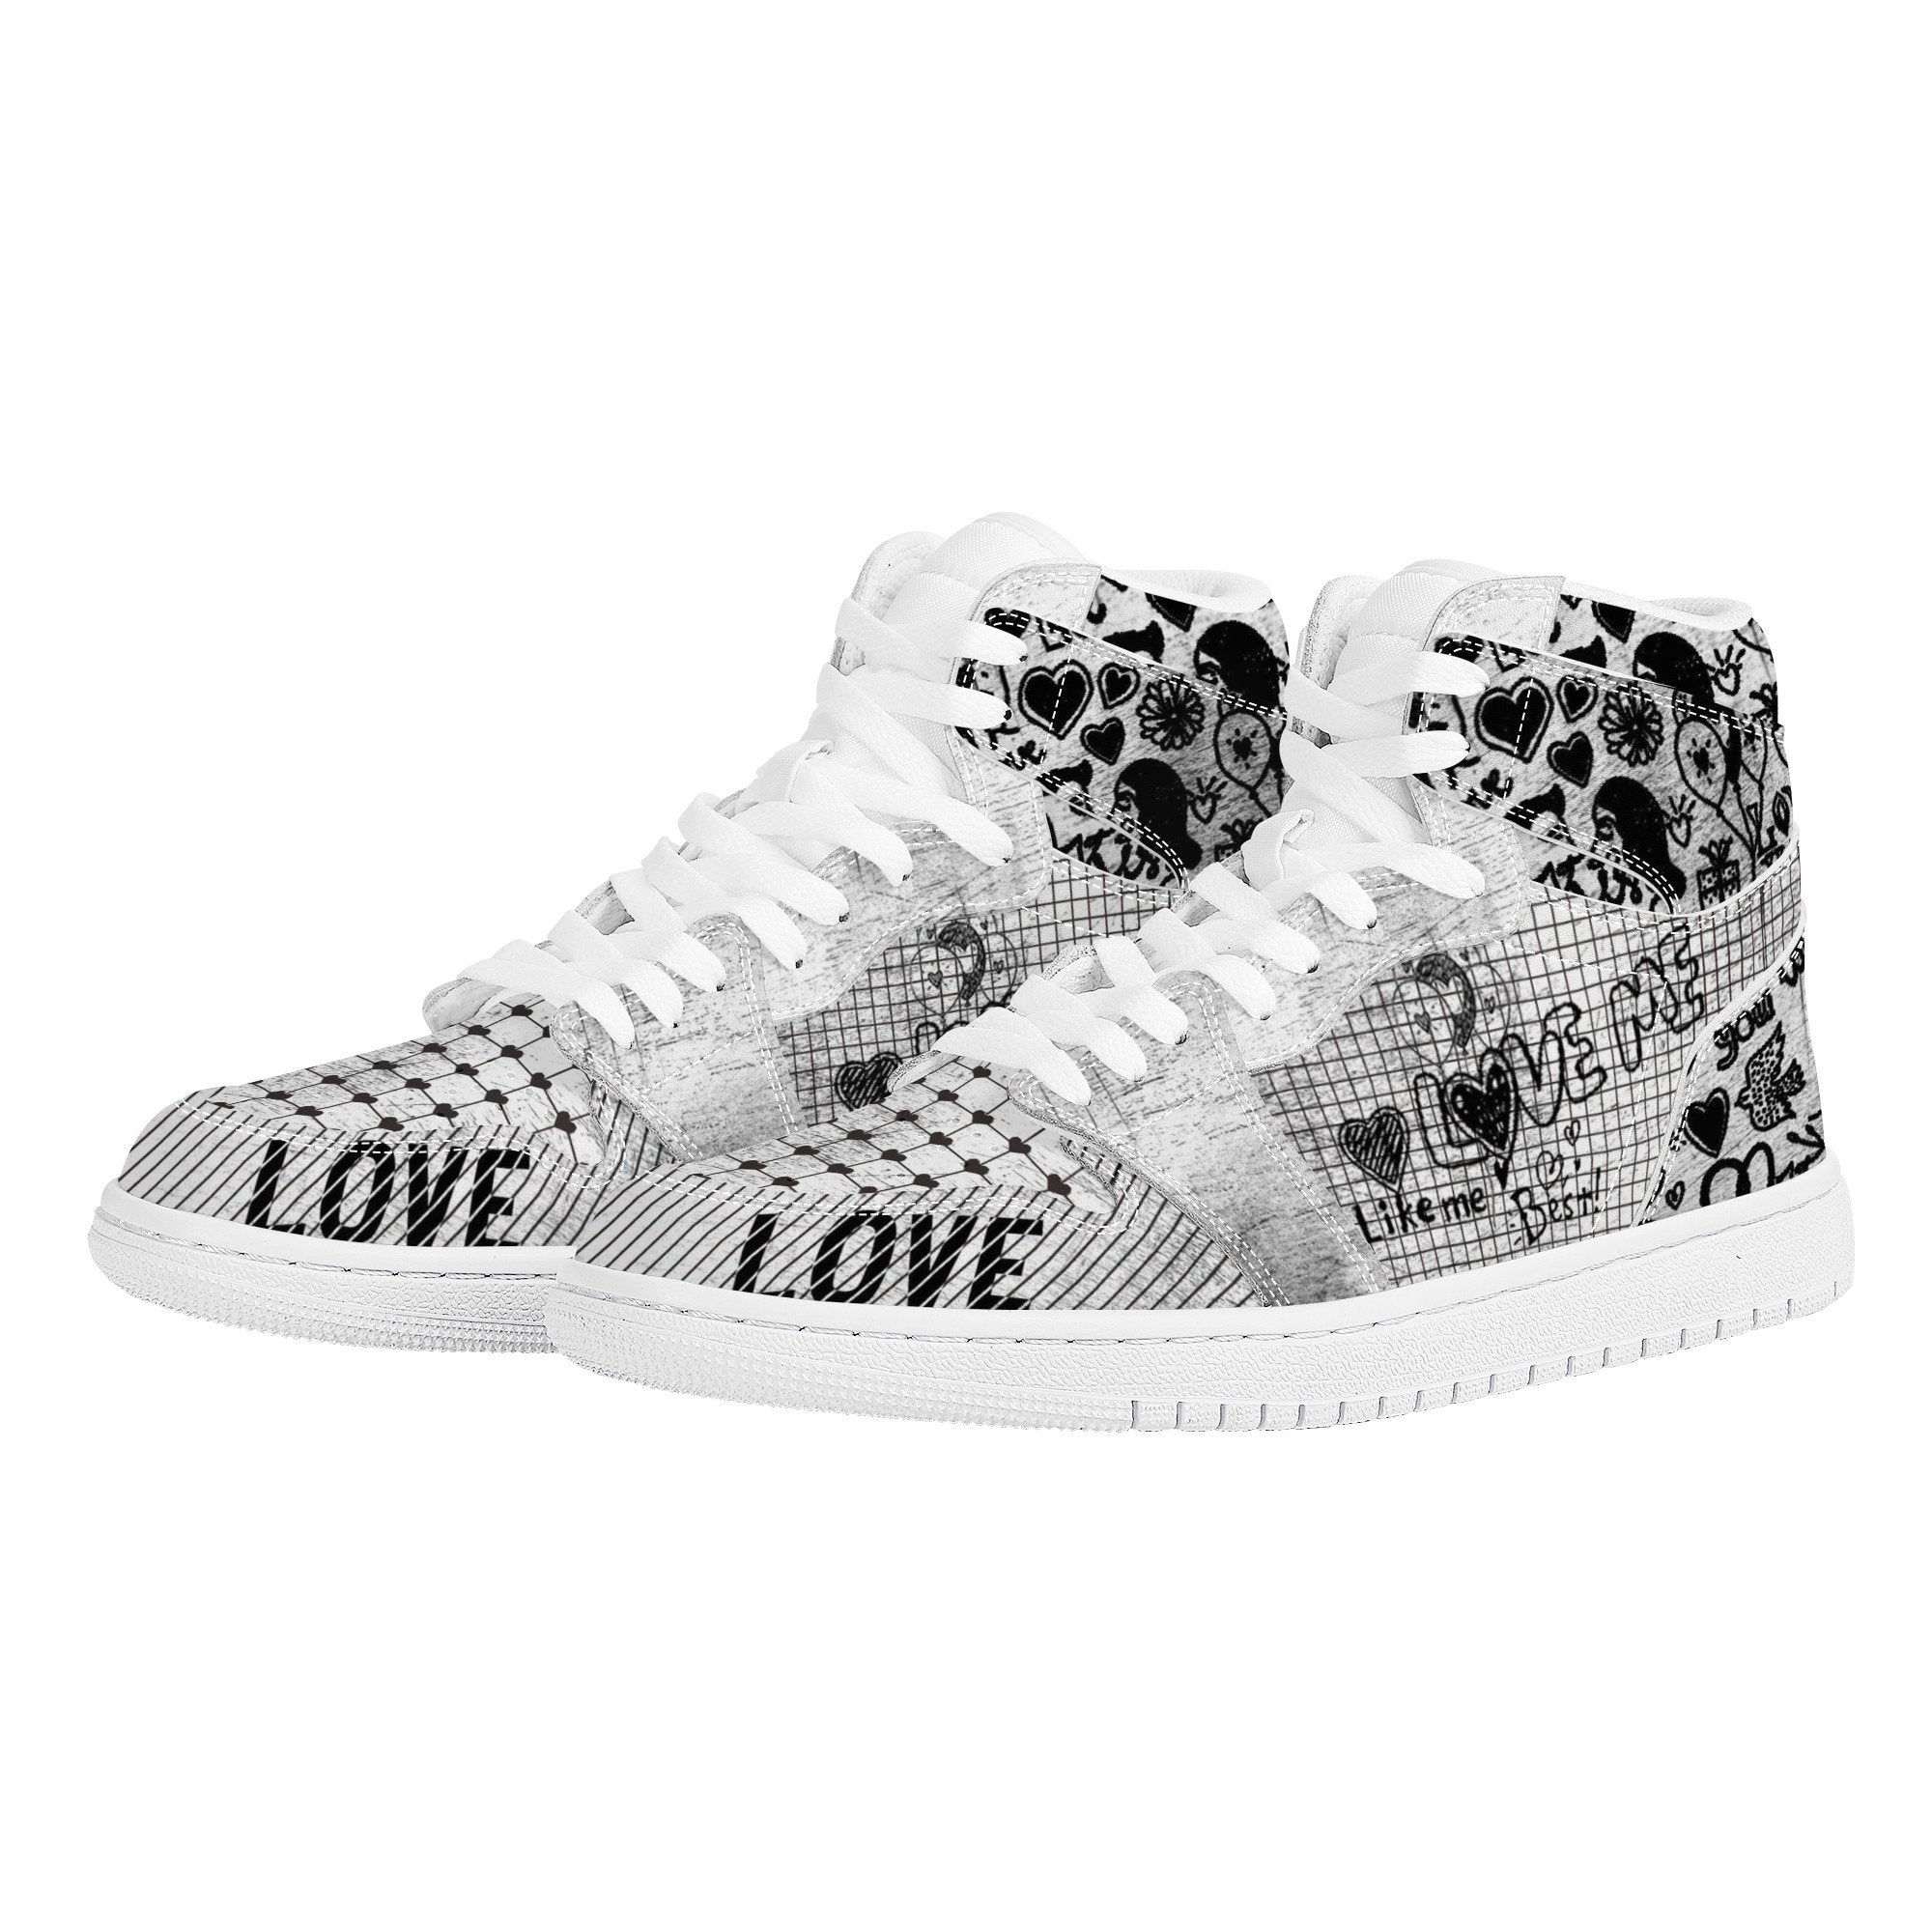 Love Me Custom Nike Air Jordan 1 Leather Sneaker